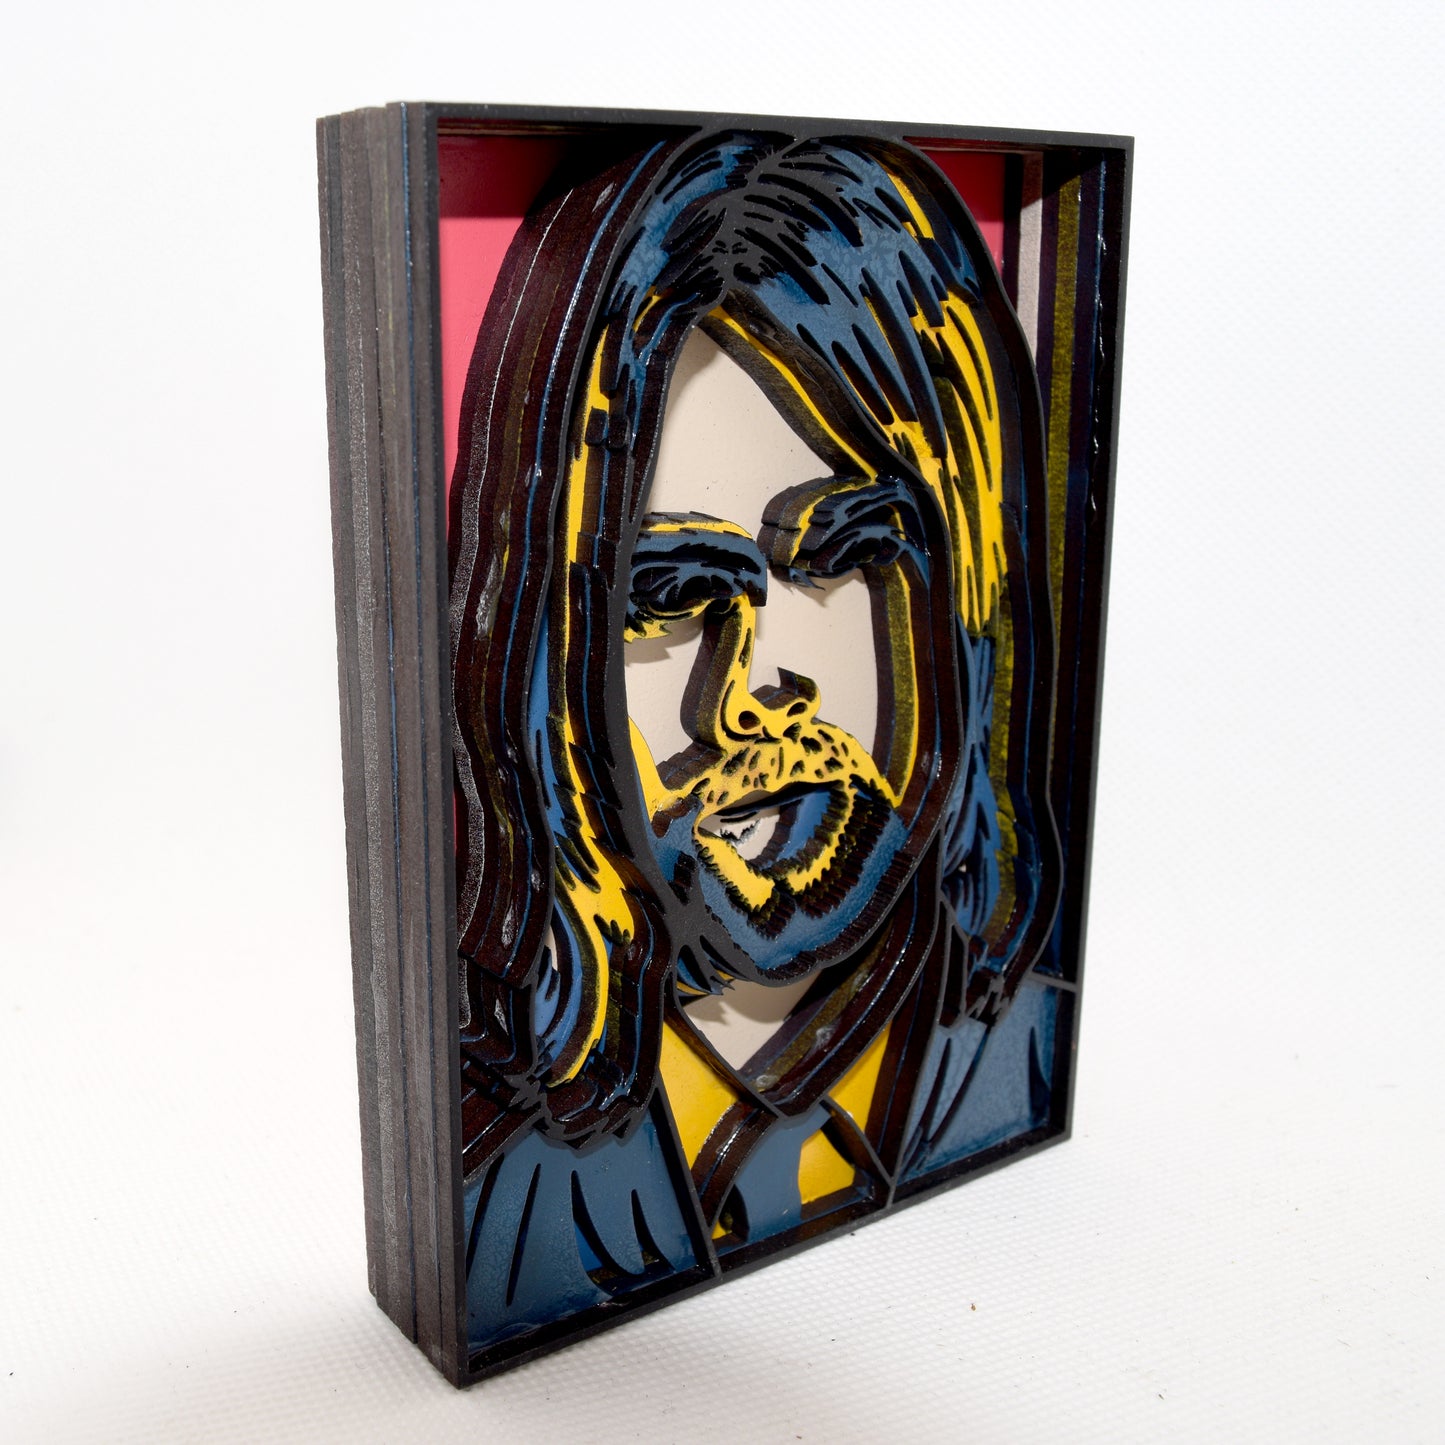 3-D Layered Kurt Cobain Wooden Art